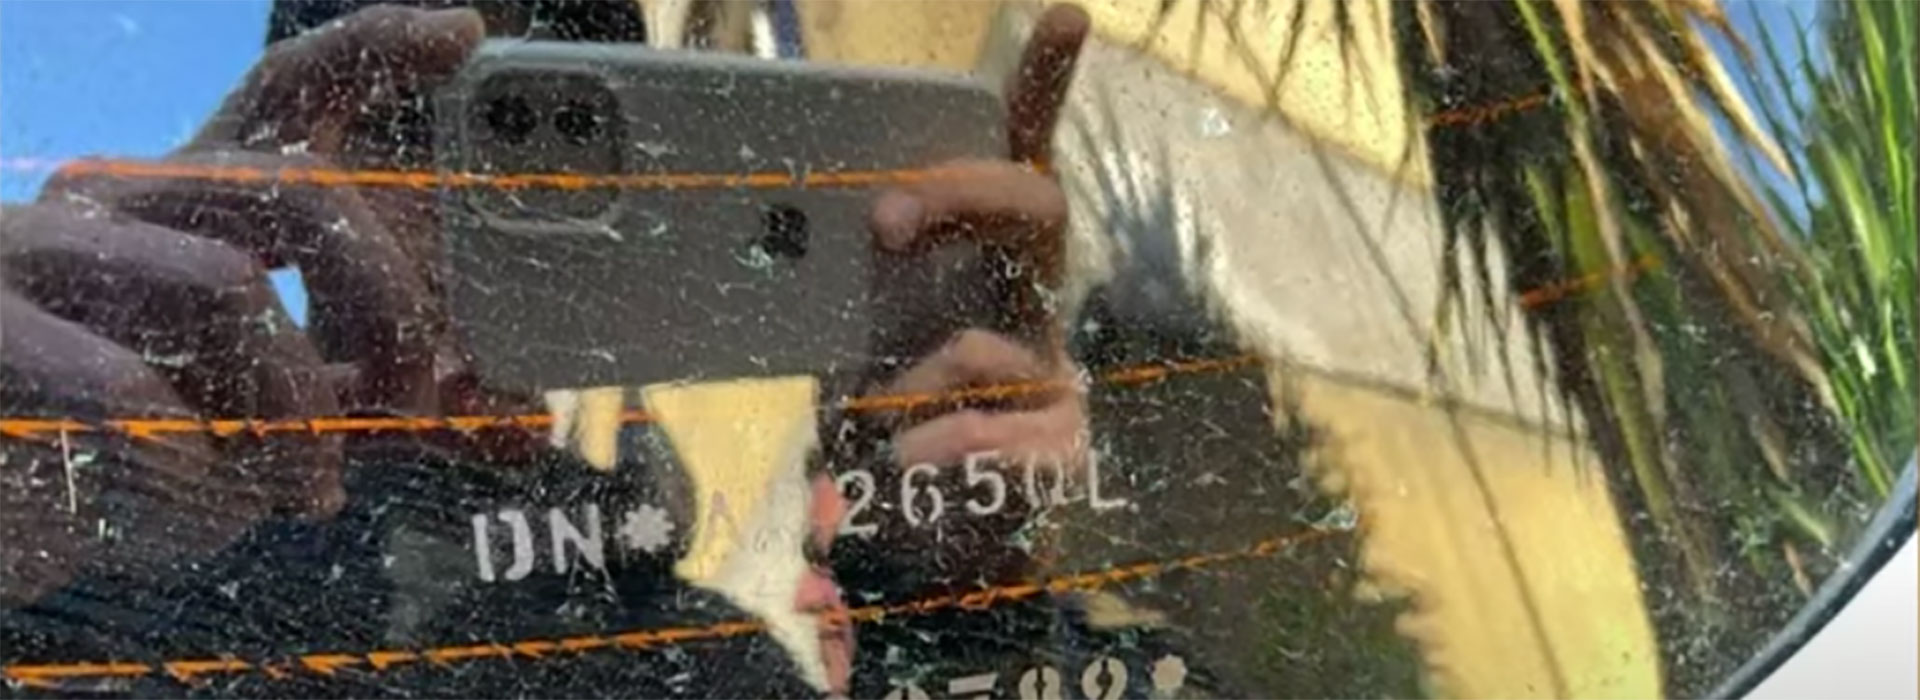 Uno de los impactos en el vidrio trasero de la camioneta